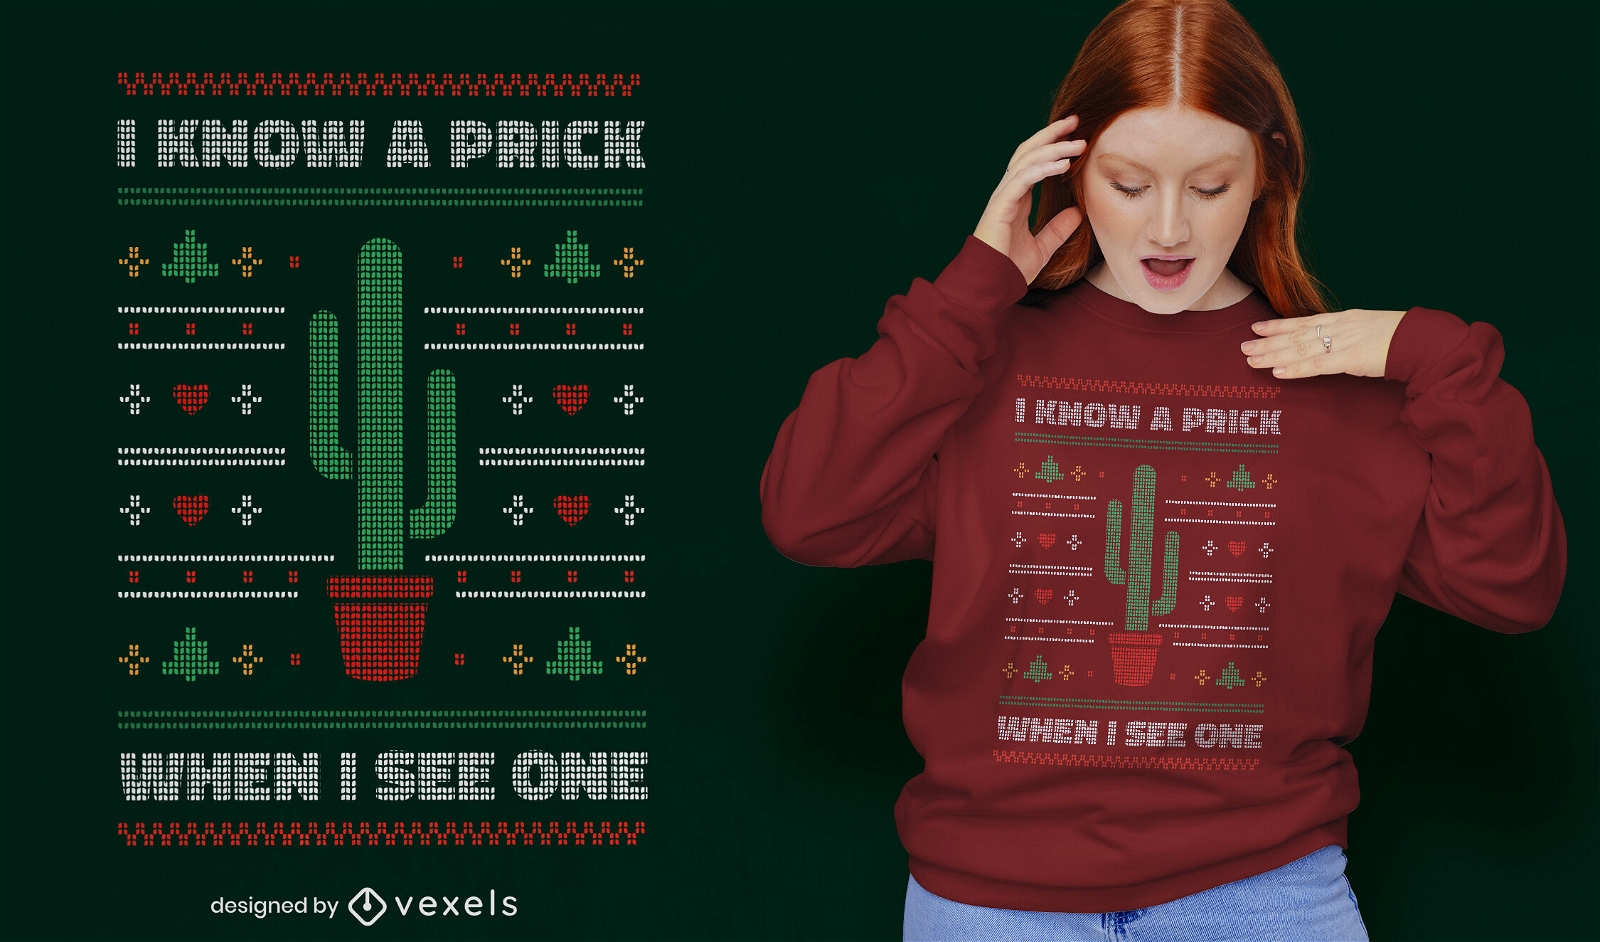 Funny prick cactus quote t-shirt design